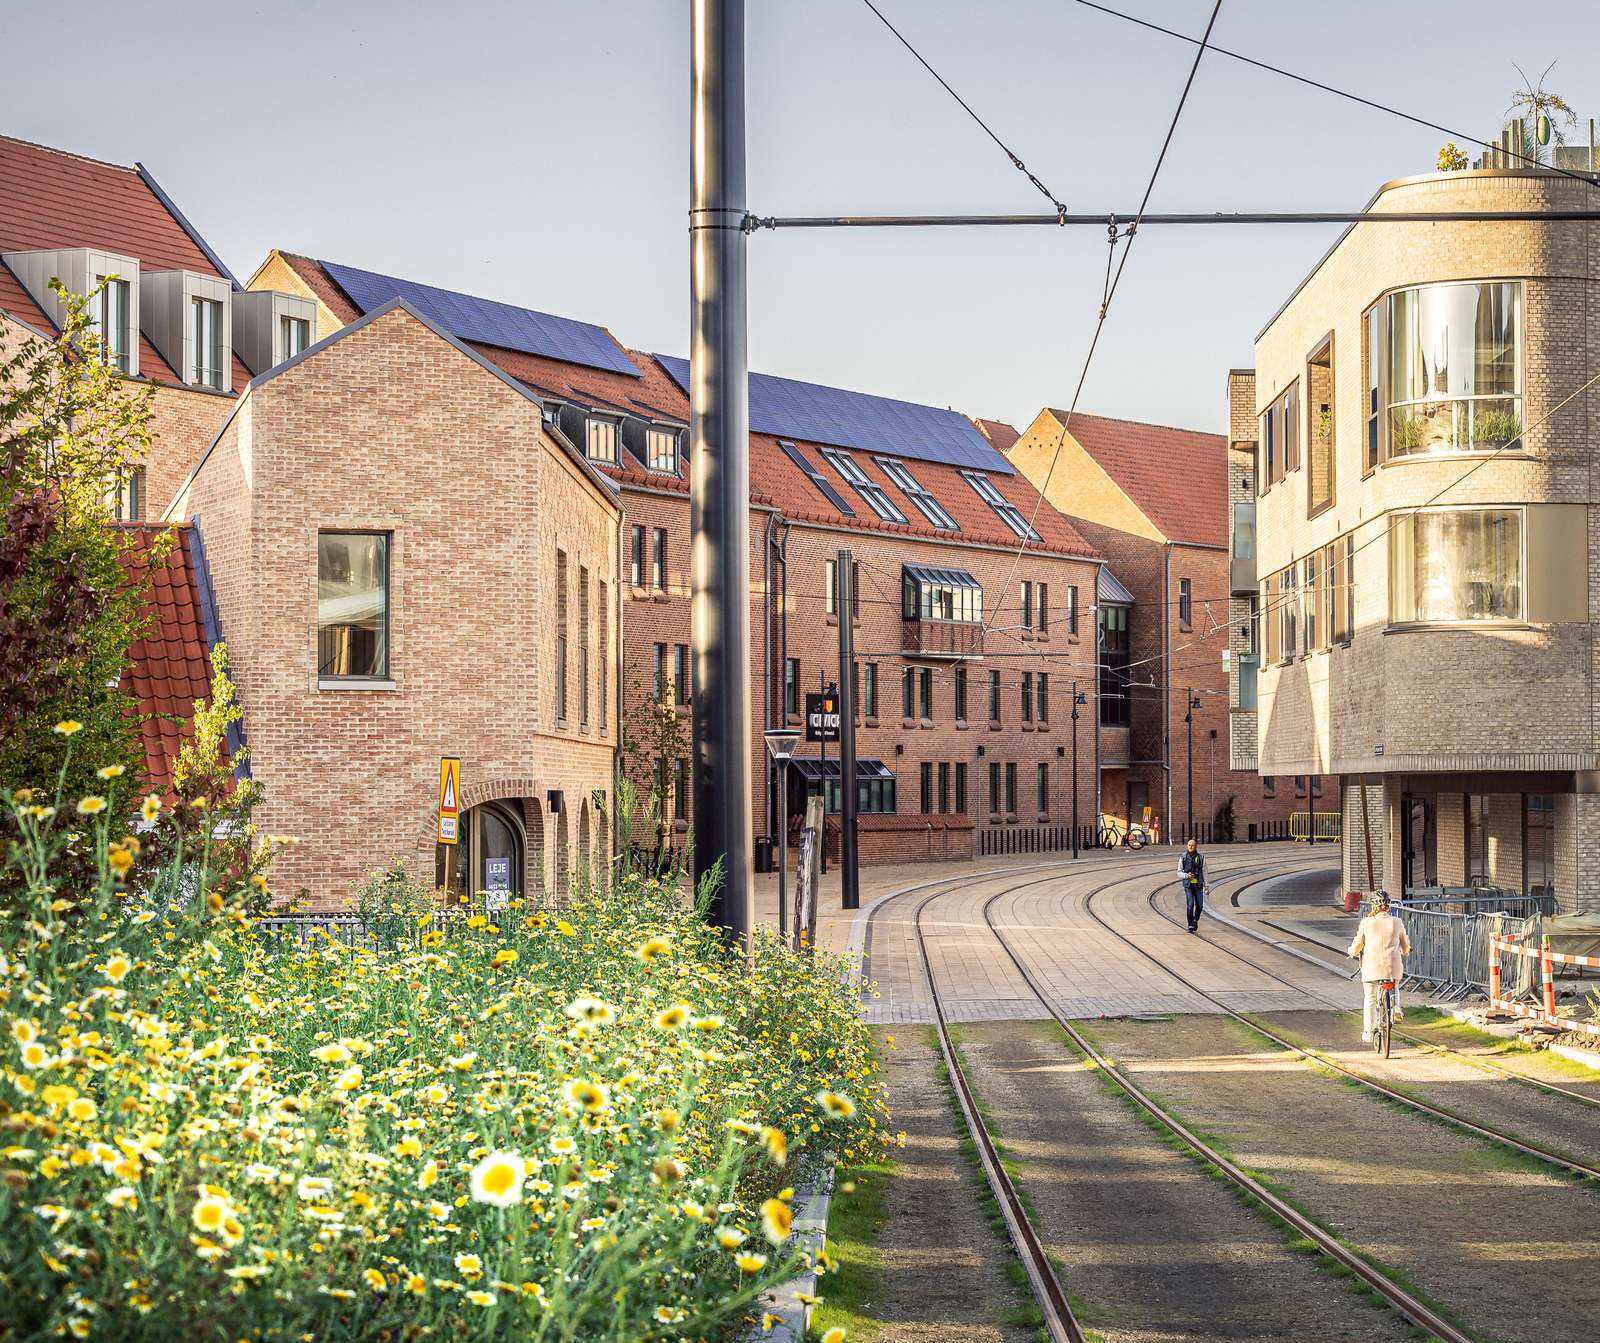 Carl Nielsen Quarter, Odense